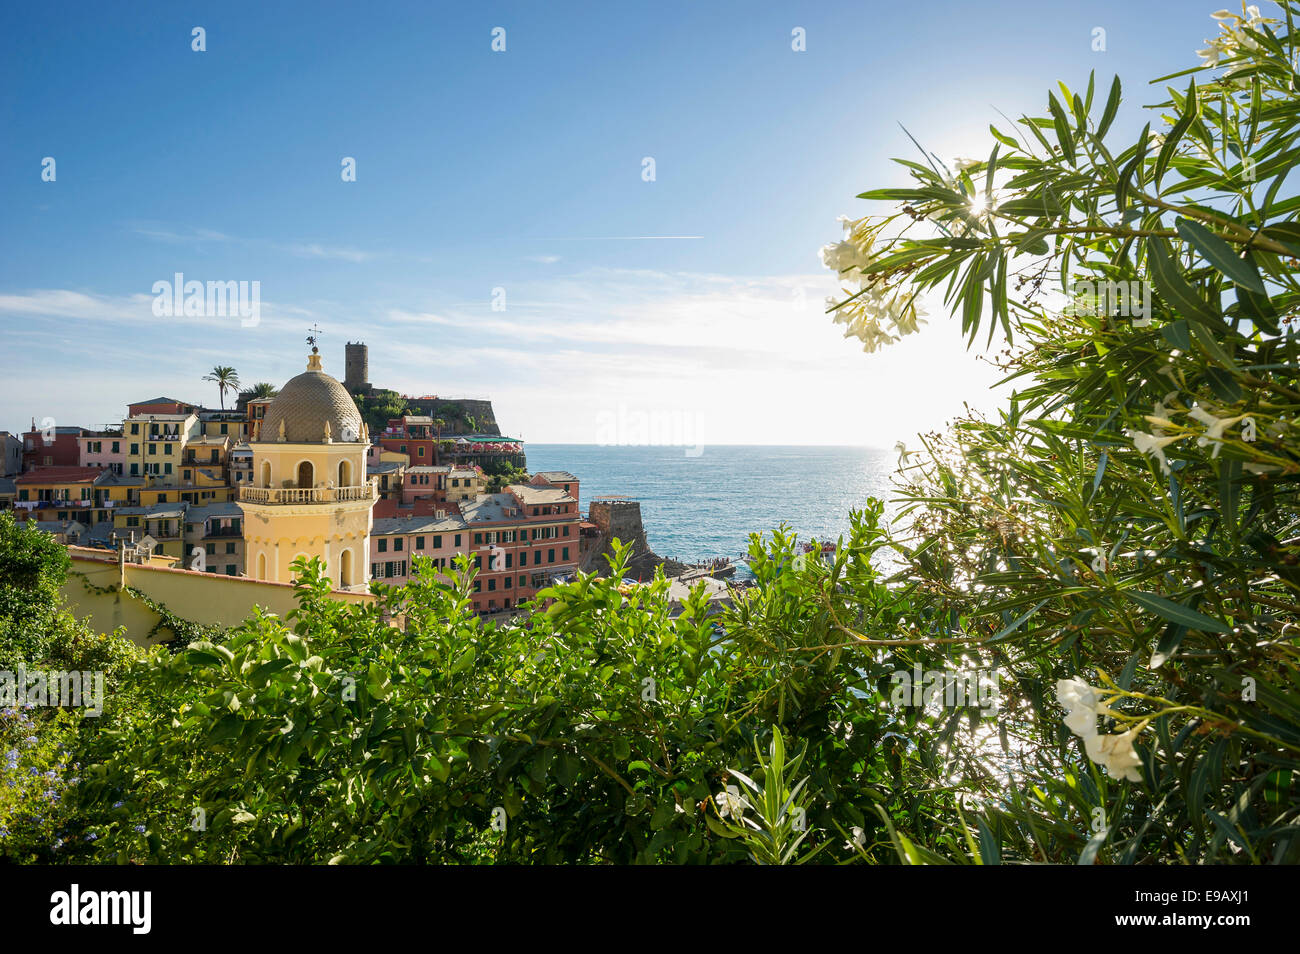 Villaggio con case colorate vicino al mare, Vernazza, Cinque Terre Provincia della Spezia, Liguria, Italia Foto Stock